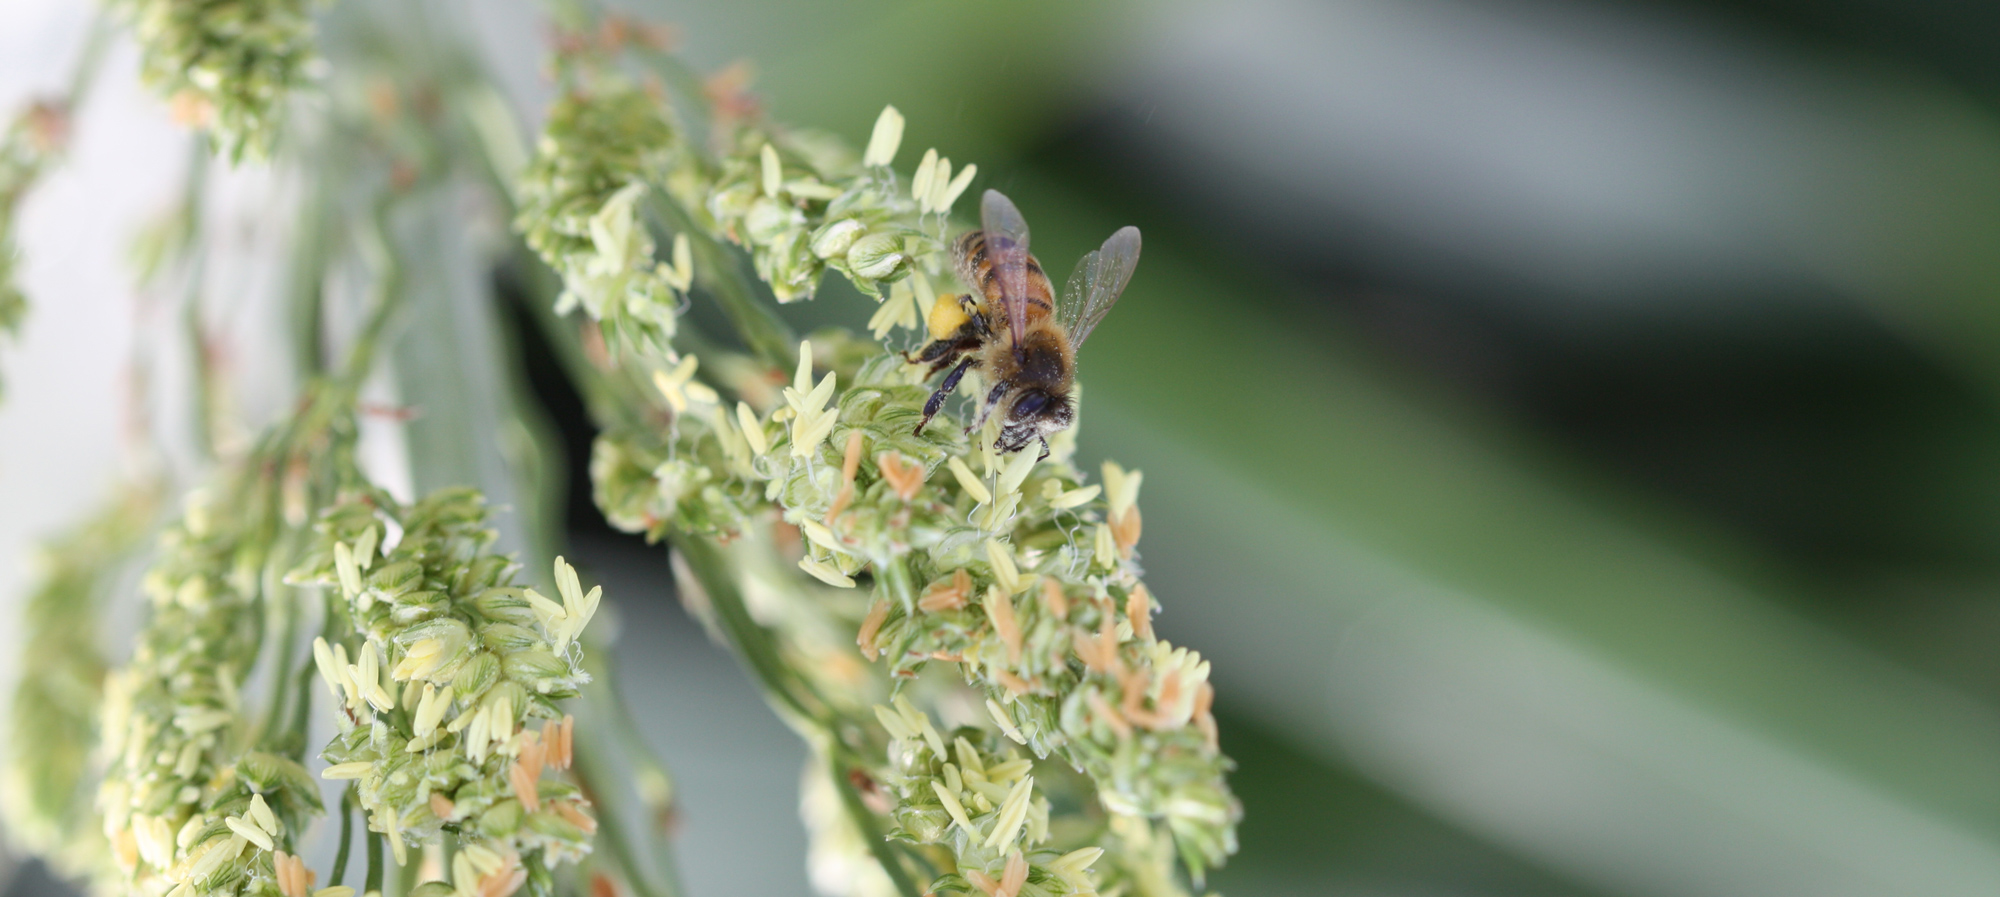 close-up of a honeybee